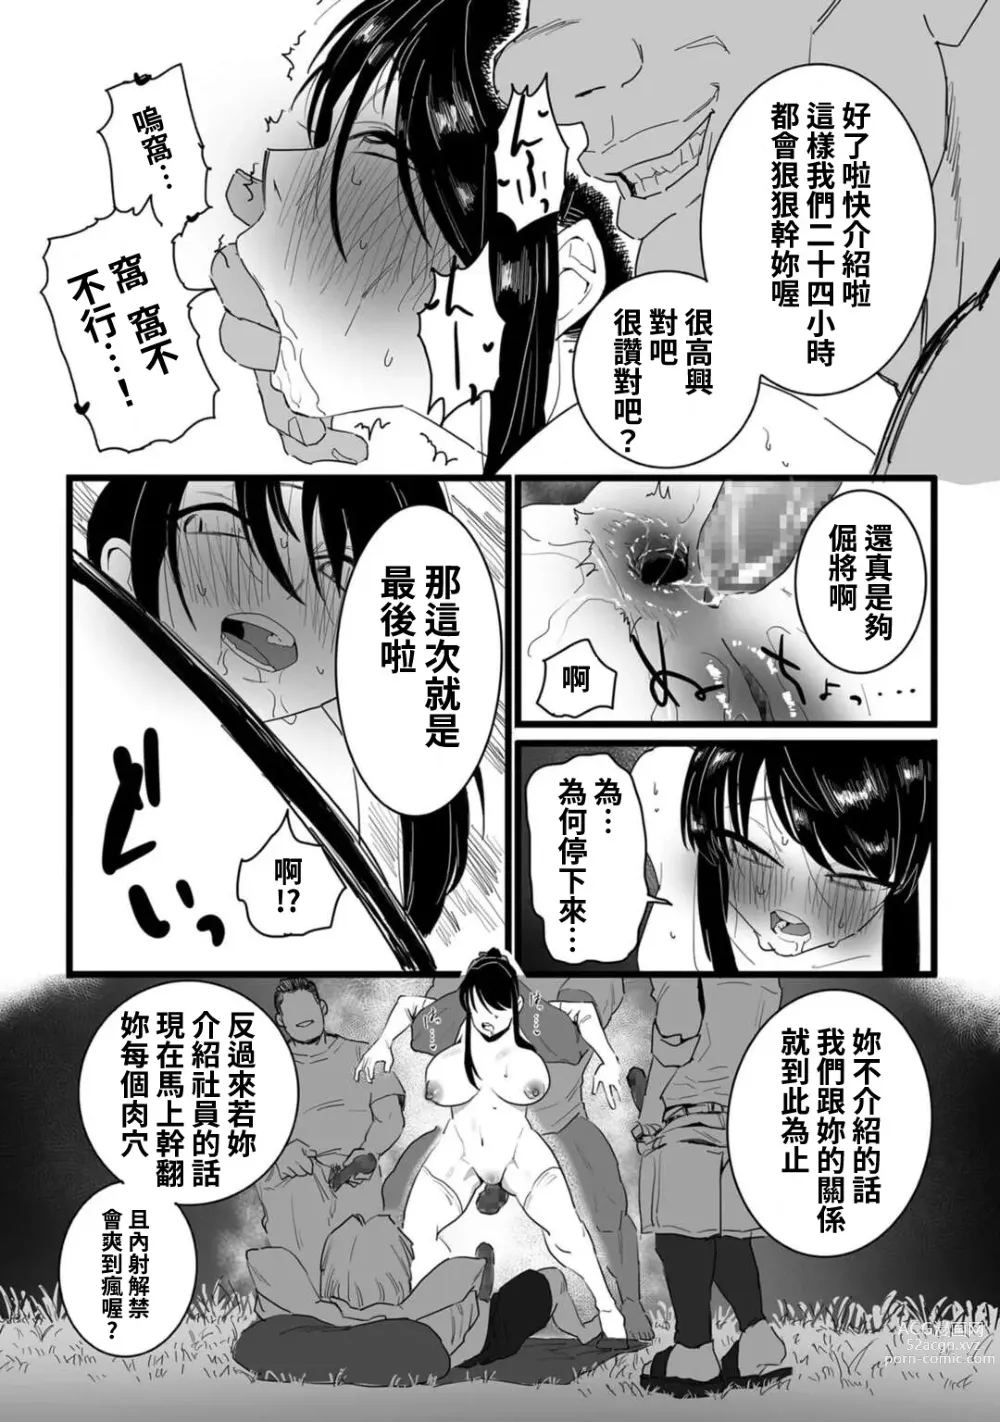 Page 23 of manga Shushou, Otsu!